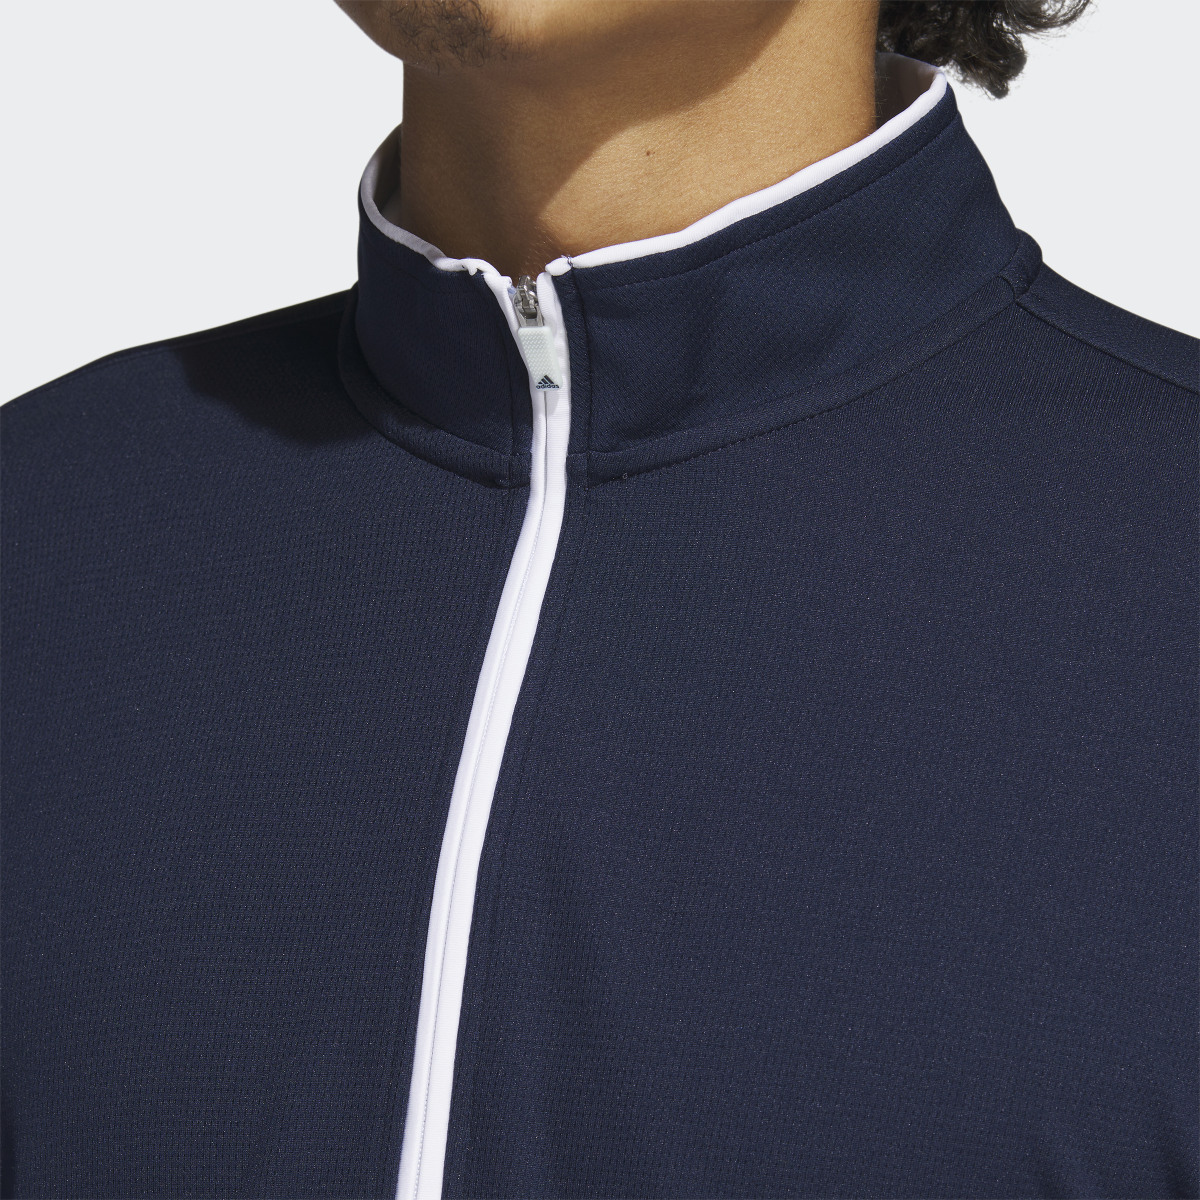 Adidas Quarter-Zip Sweatshirt. 7